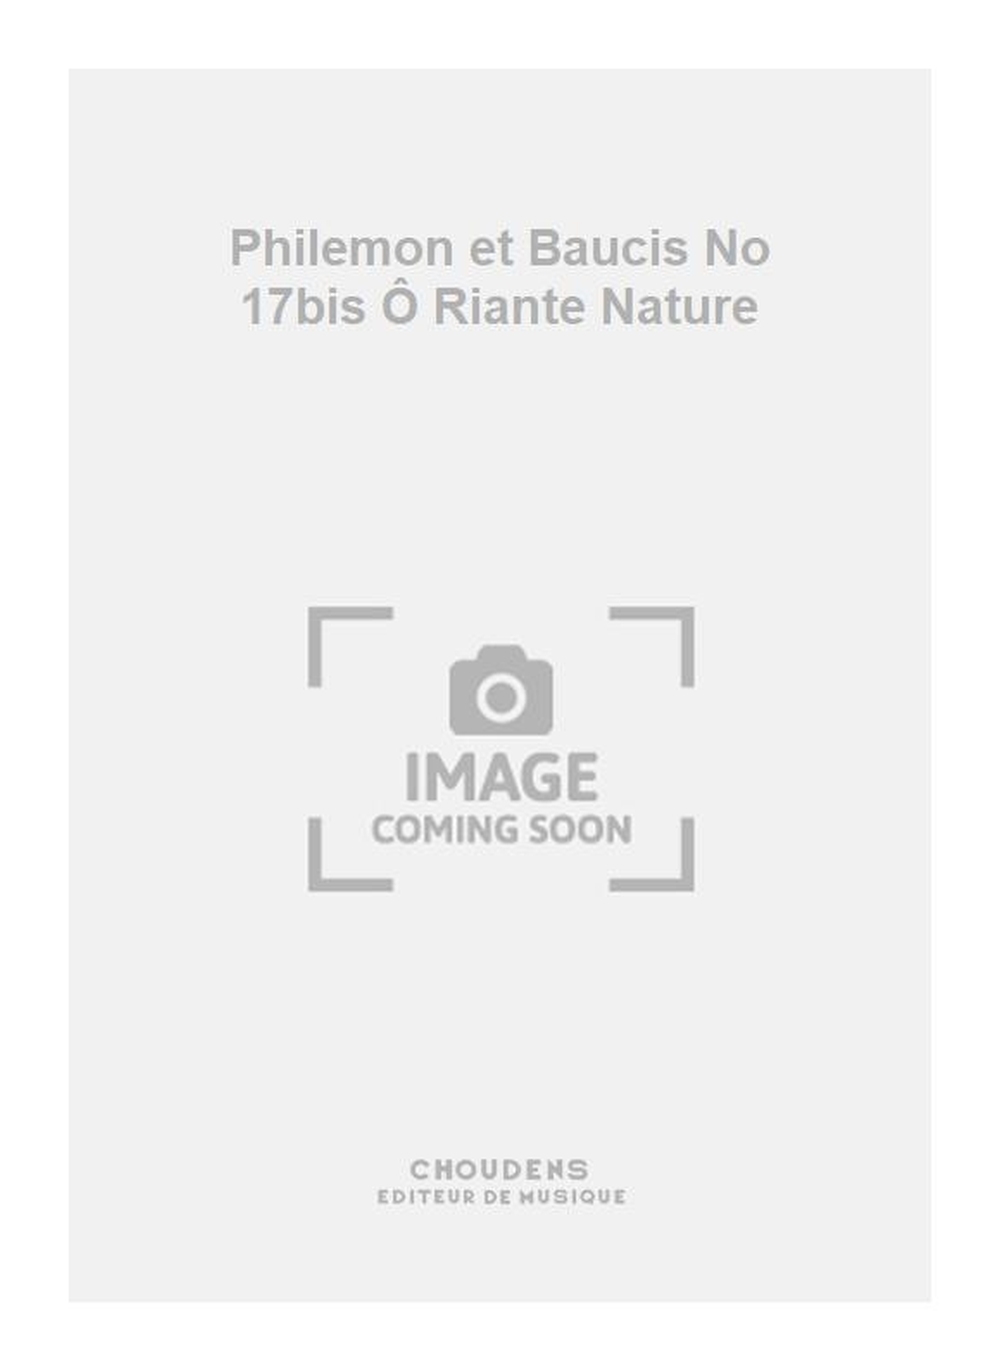 Charles Gounod: Philemon et Baucis No 17bis  Riante Nature